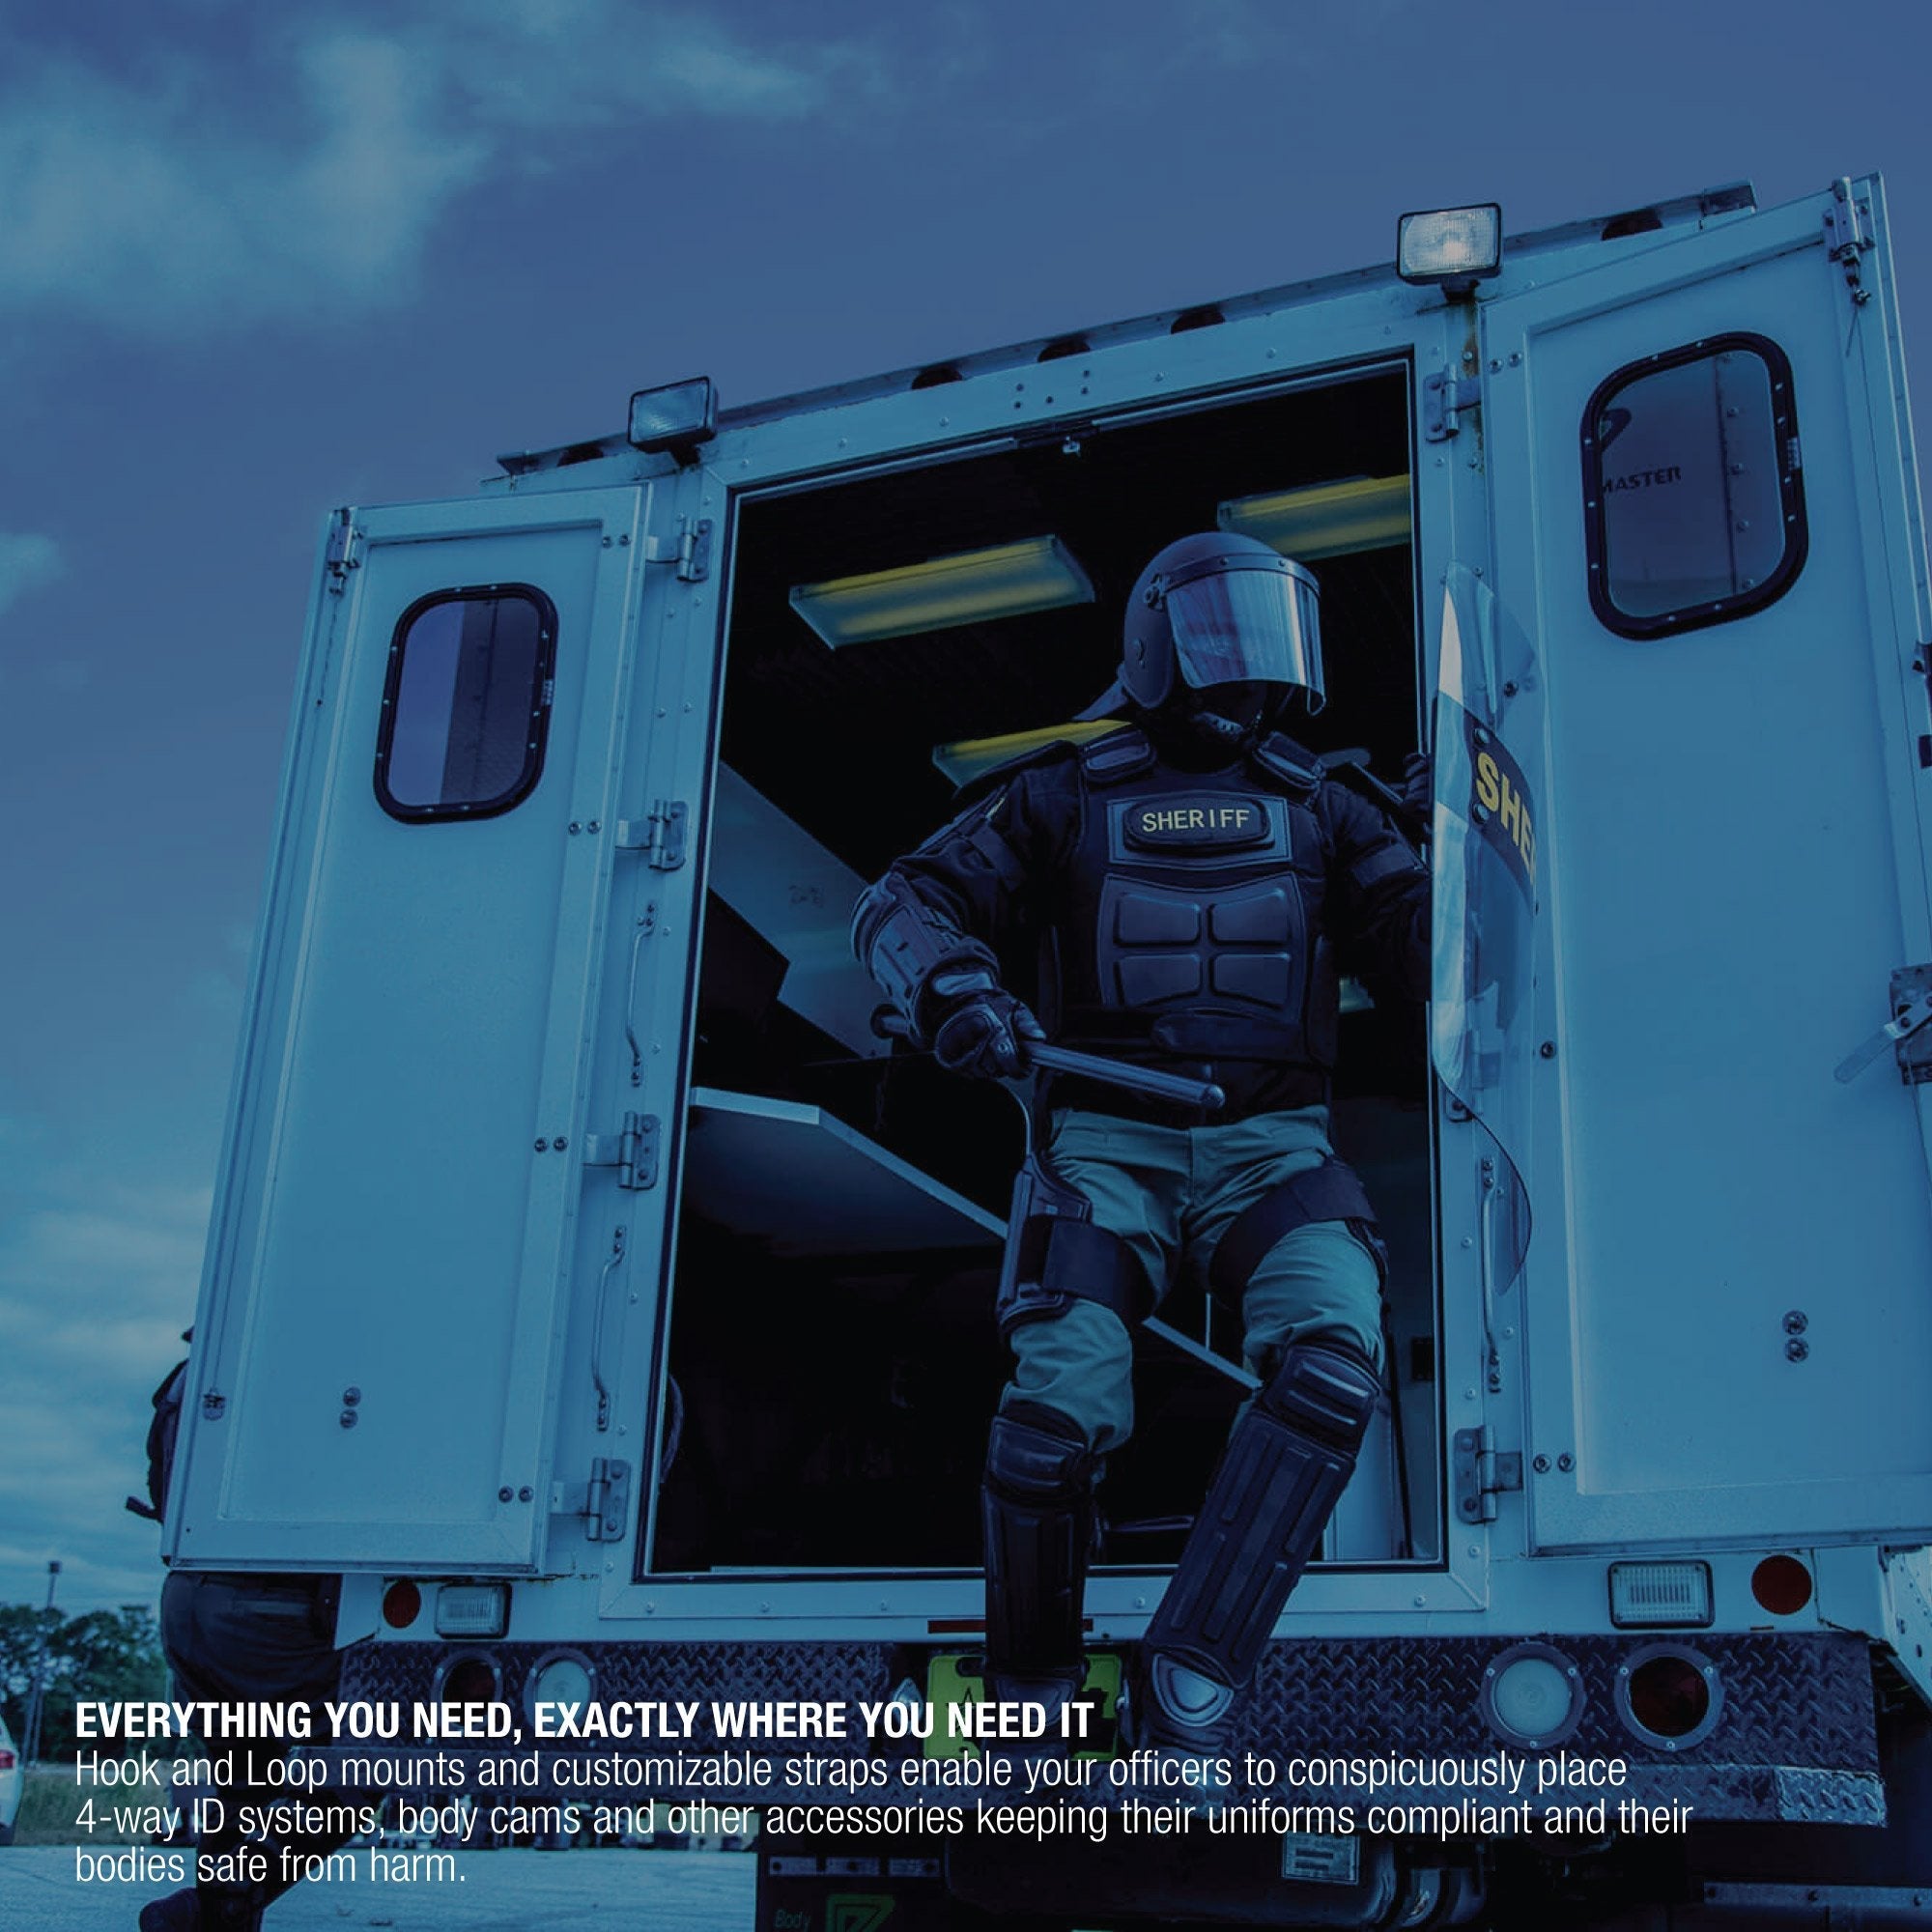 Haven Gear Patrol Riot Suit Black Tactical Haven Gear Tactical Gear Supplier Tactical Distributors Australia